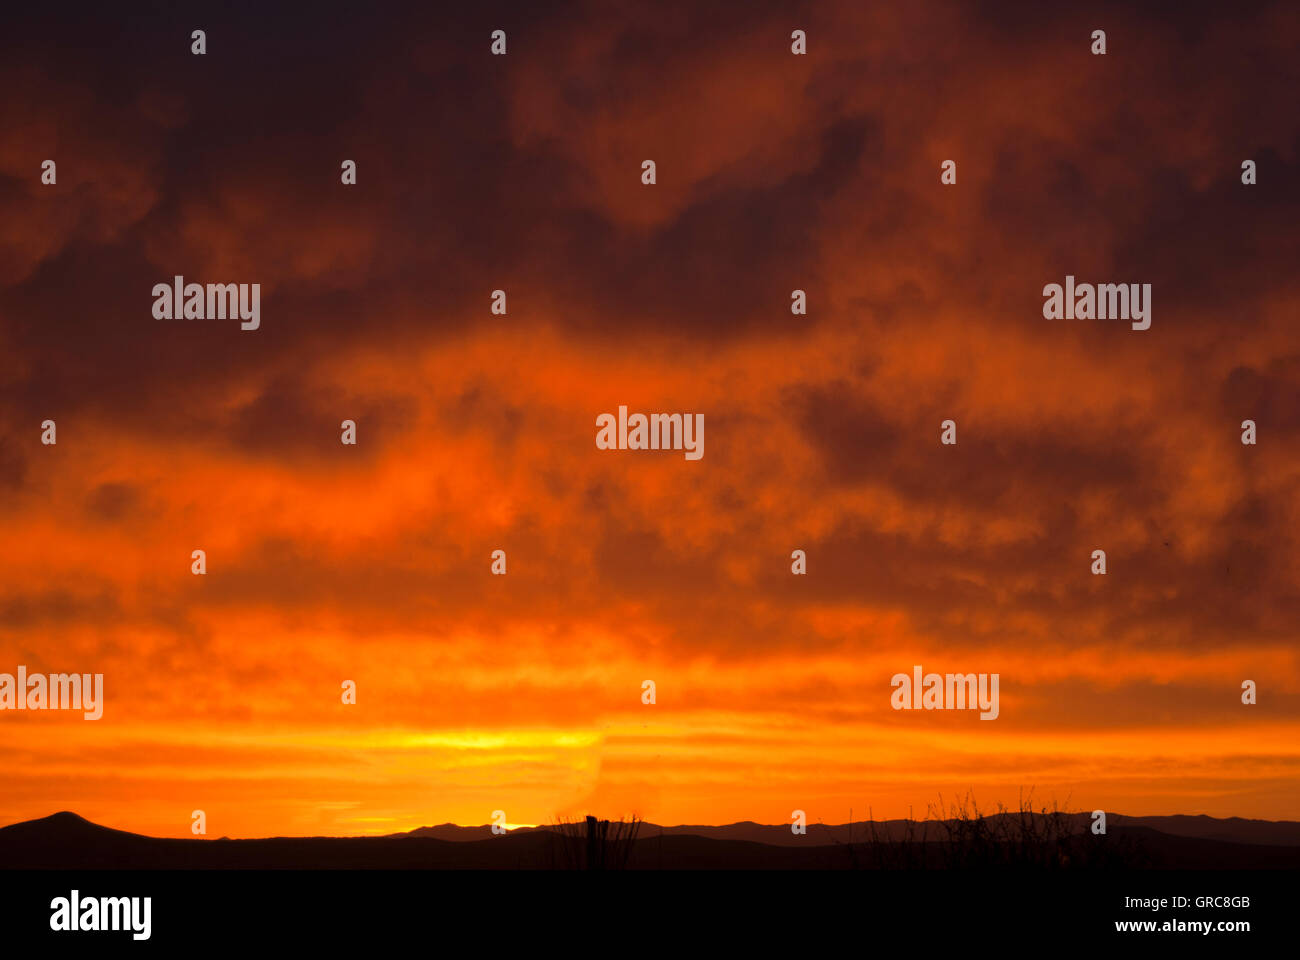 Bright red sunset over desert Stock Photo